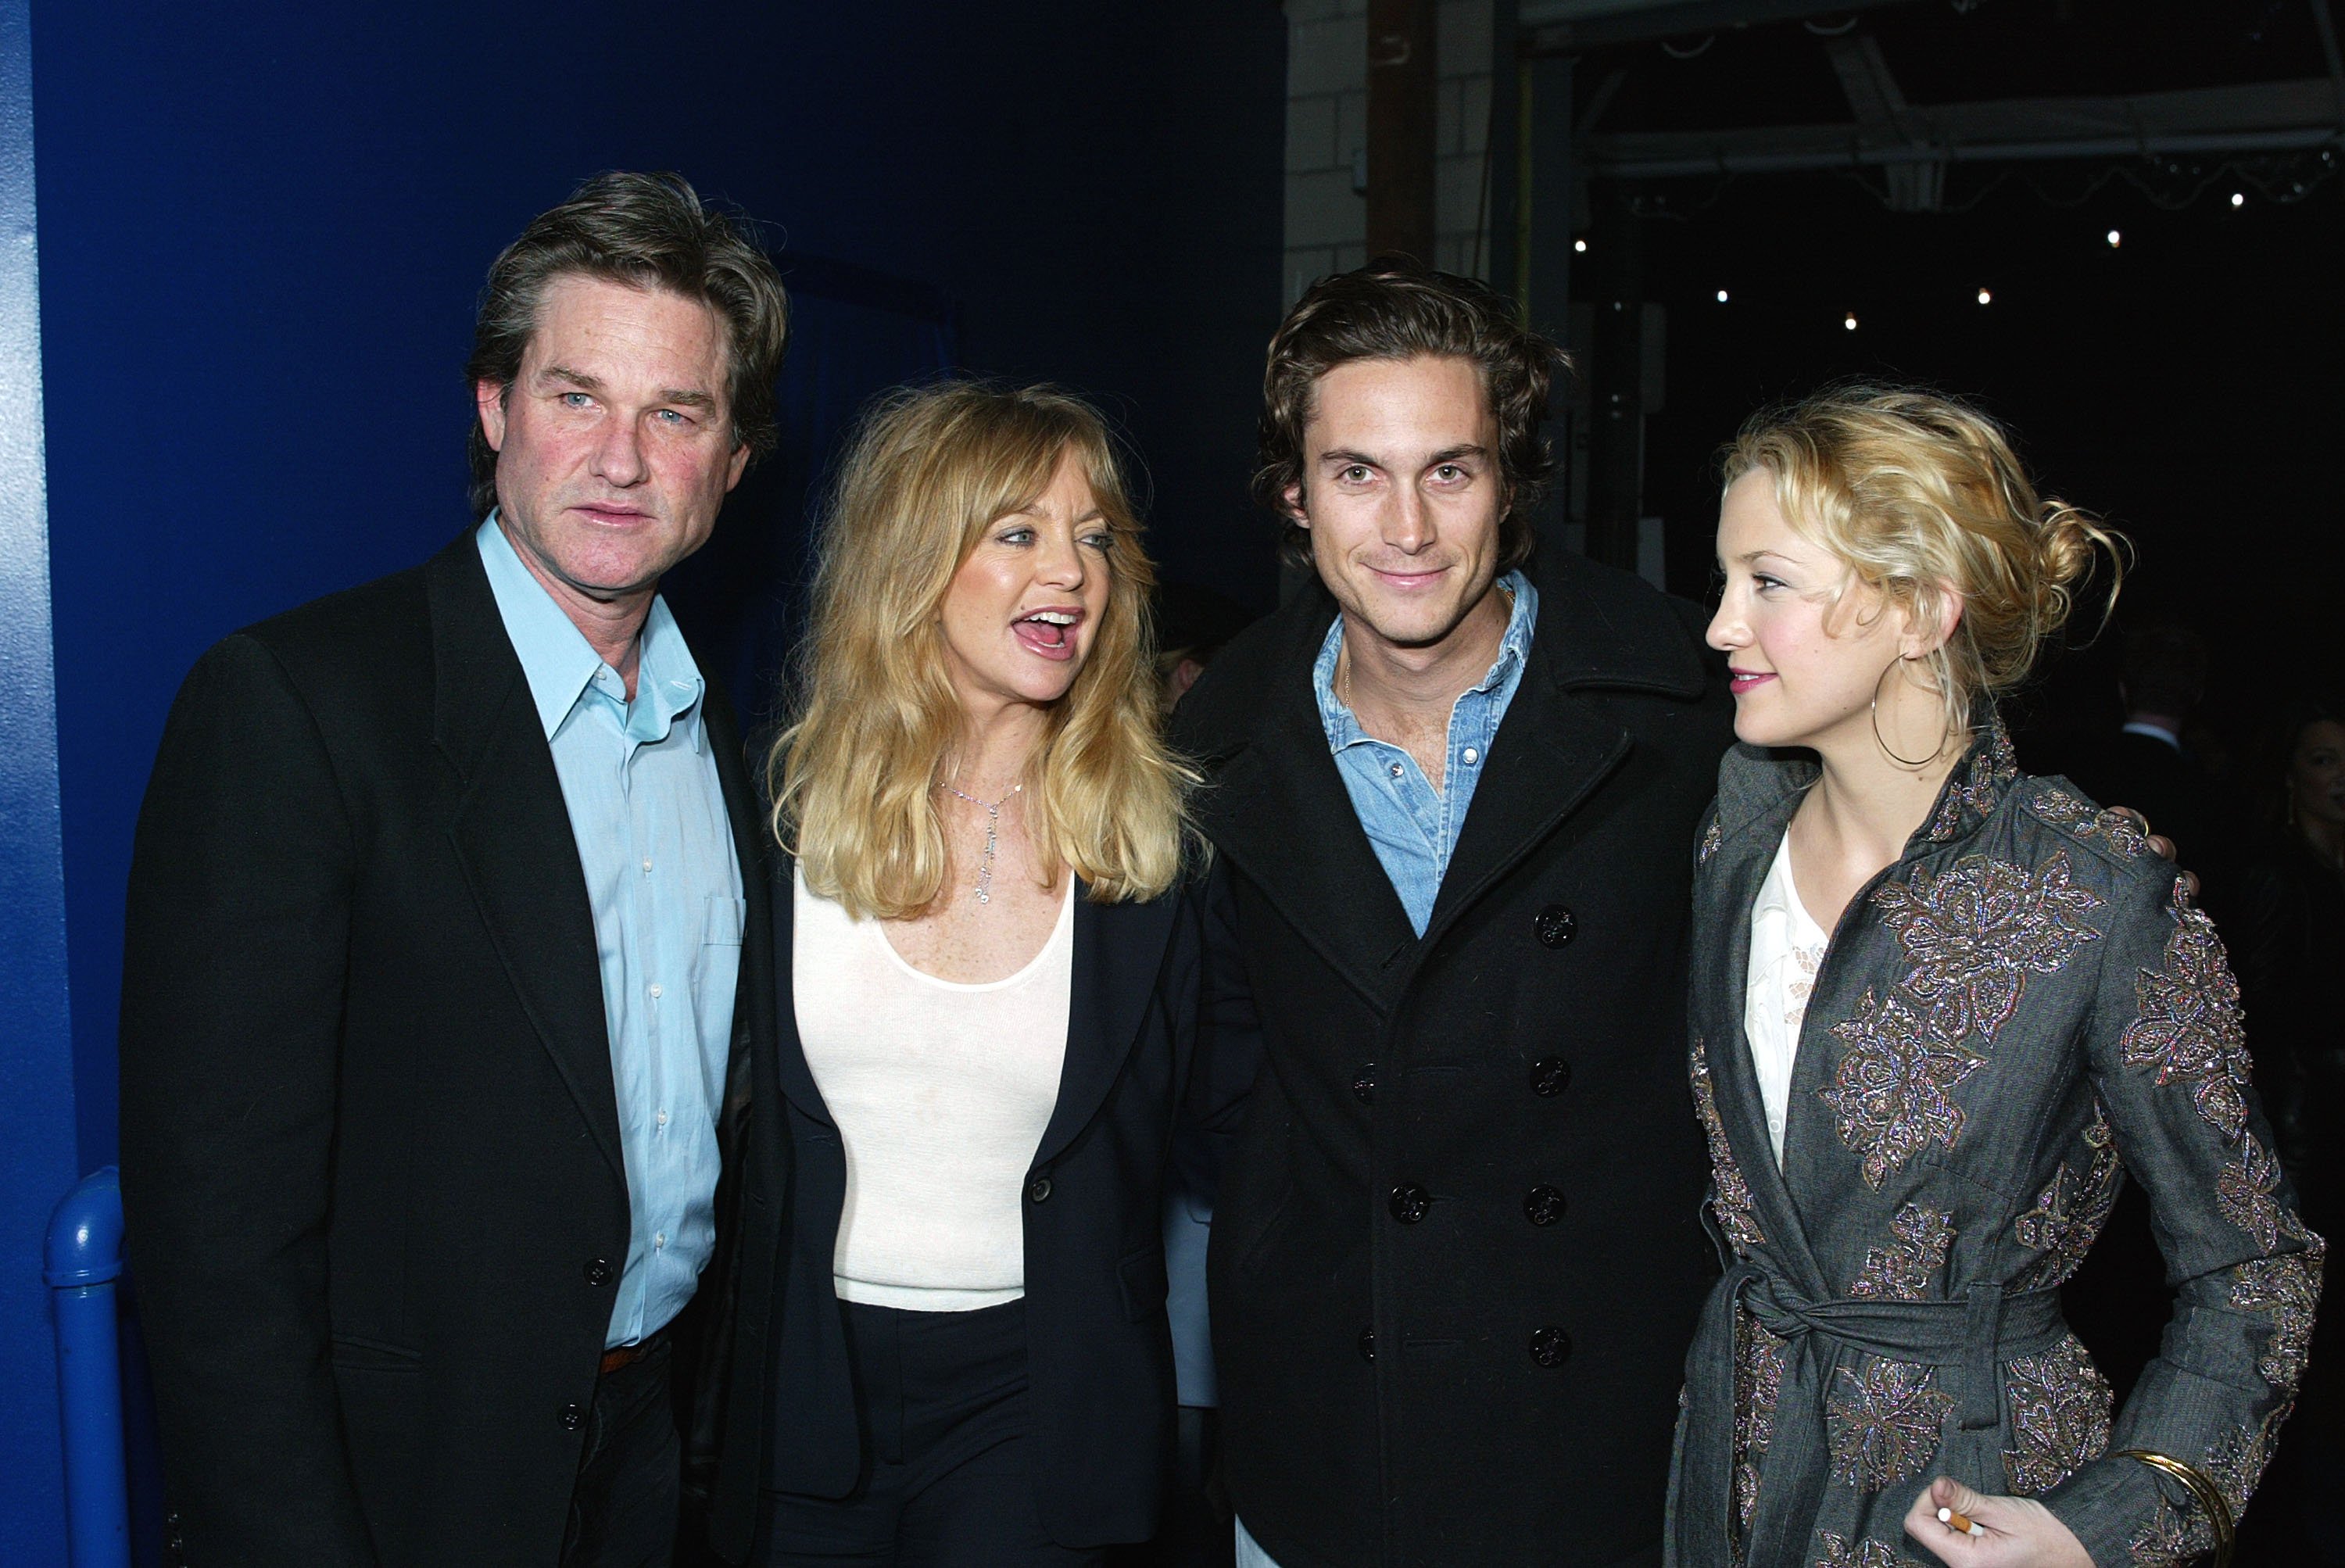 Kurt Russell, Goldie Hawn, Oliver Hudson et sa soeur Kate Hudson posent lors de la soirée d'après-première de "Dark Blue" le 12 février 2003 | Source : Getty Images